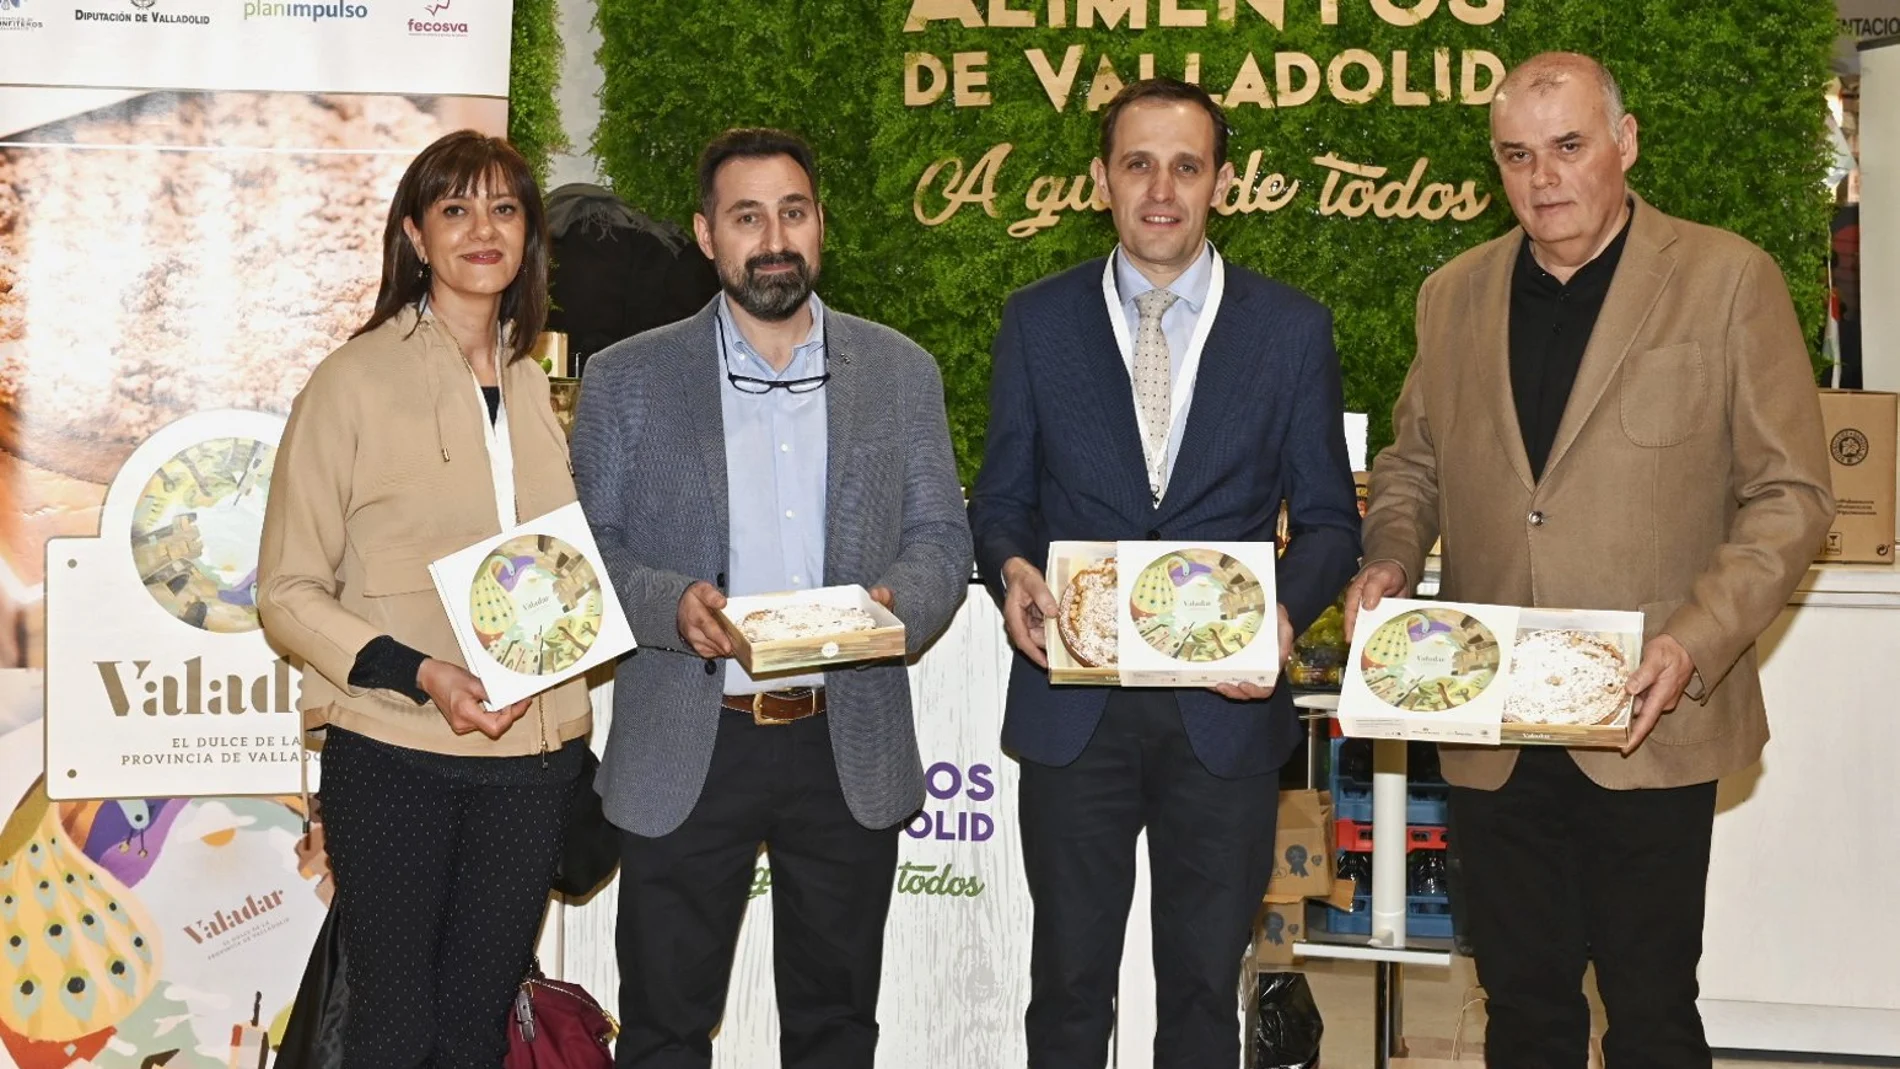 El presidente de la Diputación, Conrado Íscar, presenta el postre de Valladolid